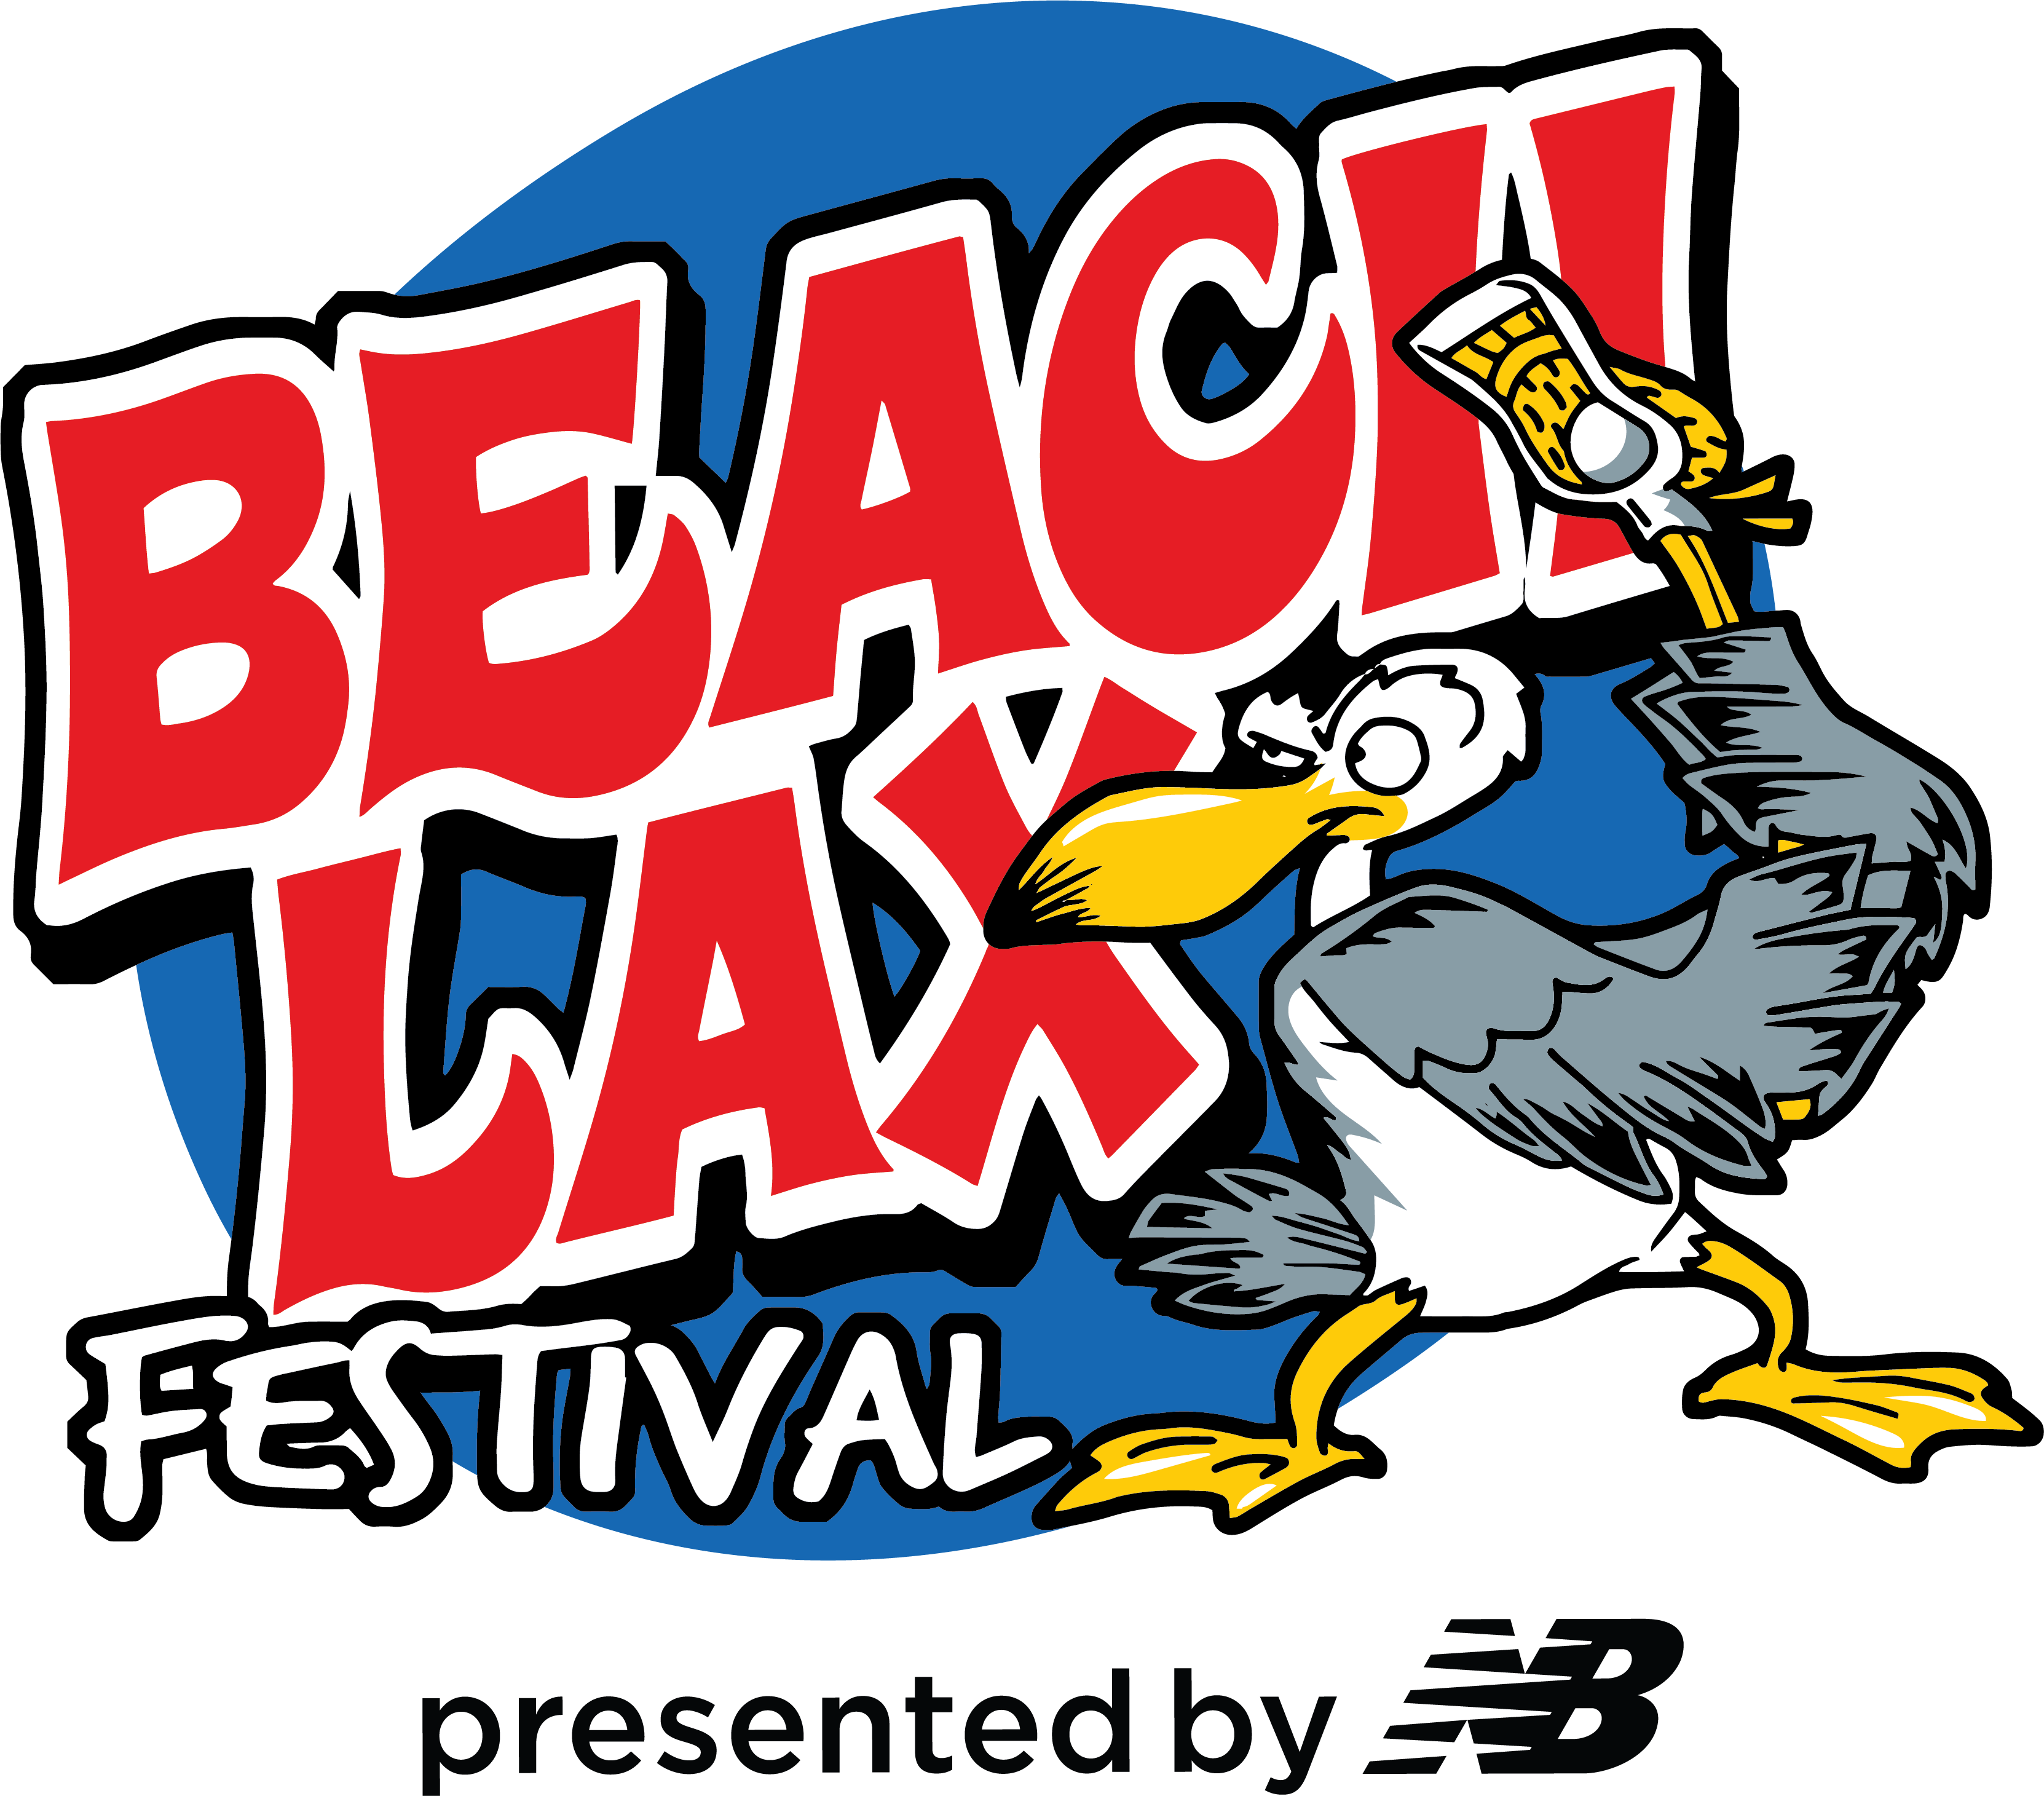 Beach Lax Festival